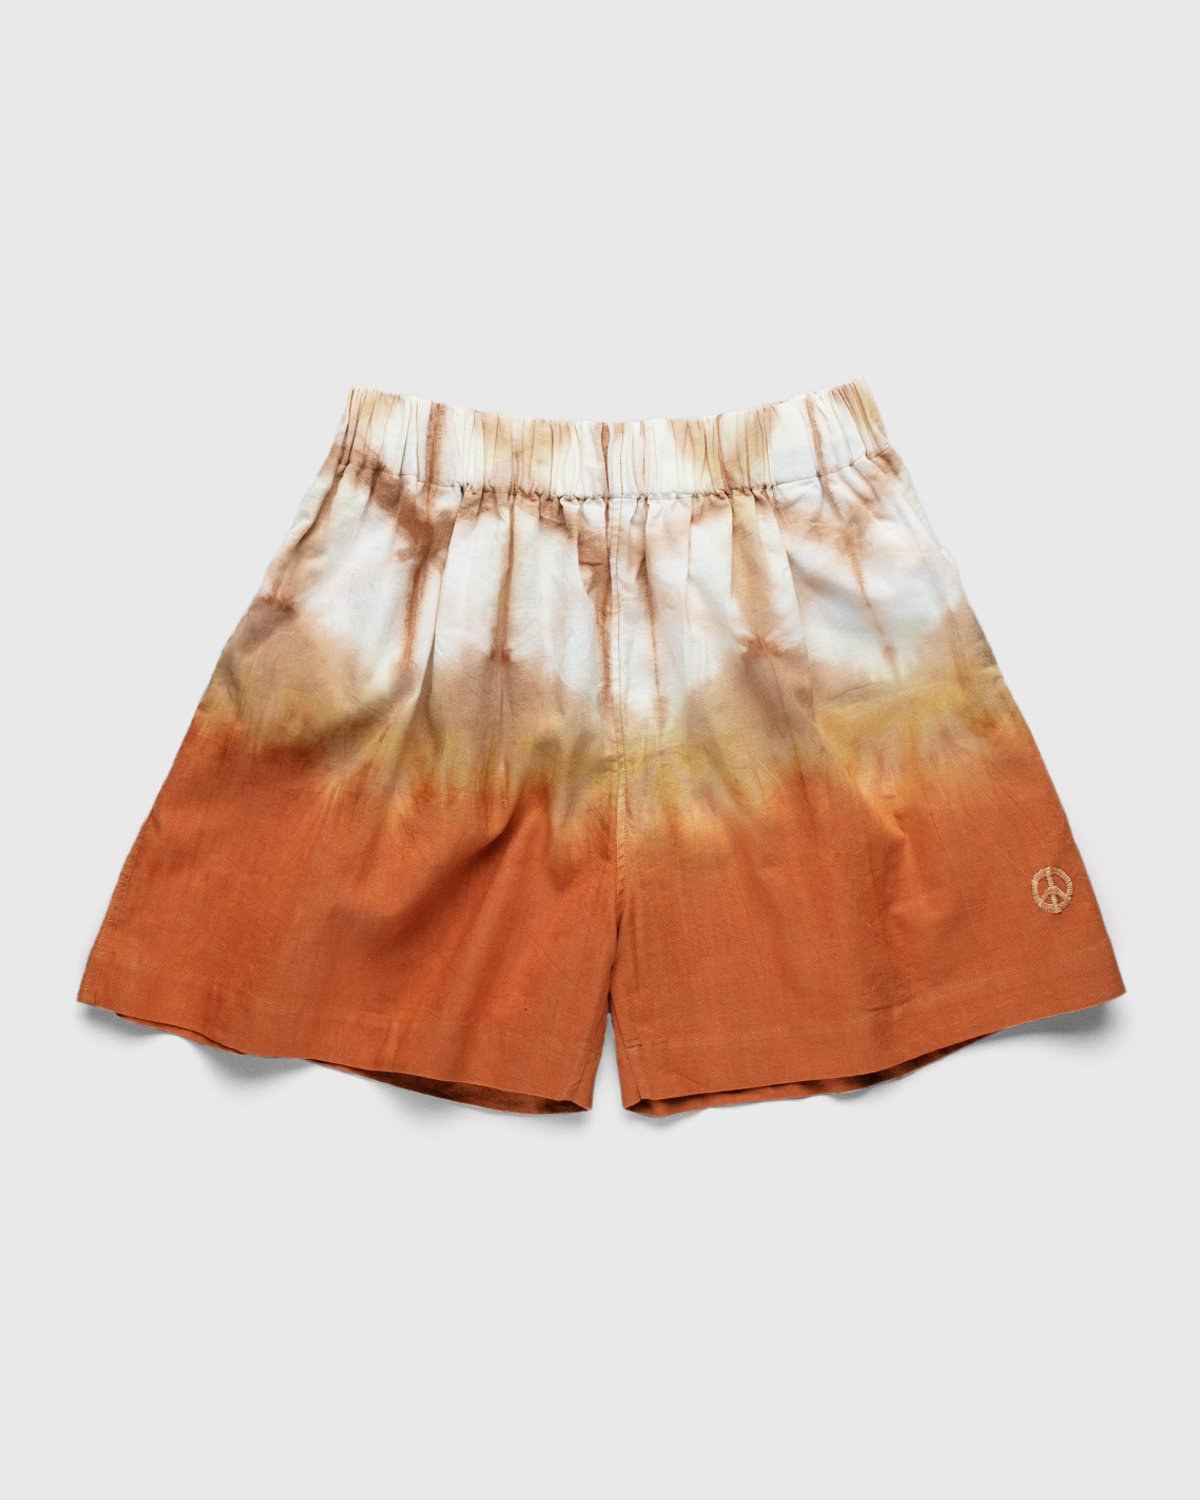 Story mfg. - Yeah Shorts Sun Clamp - Clothing - Multi - Image 1